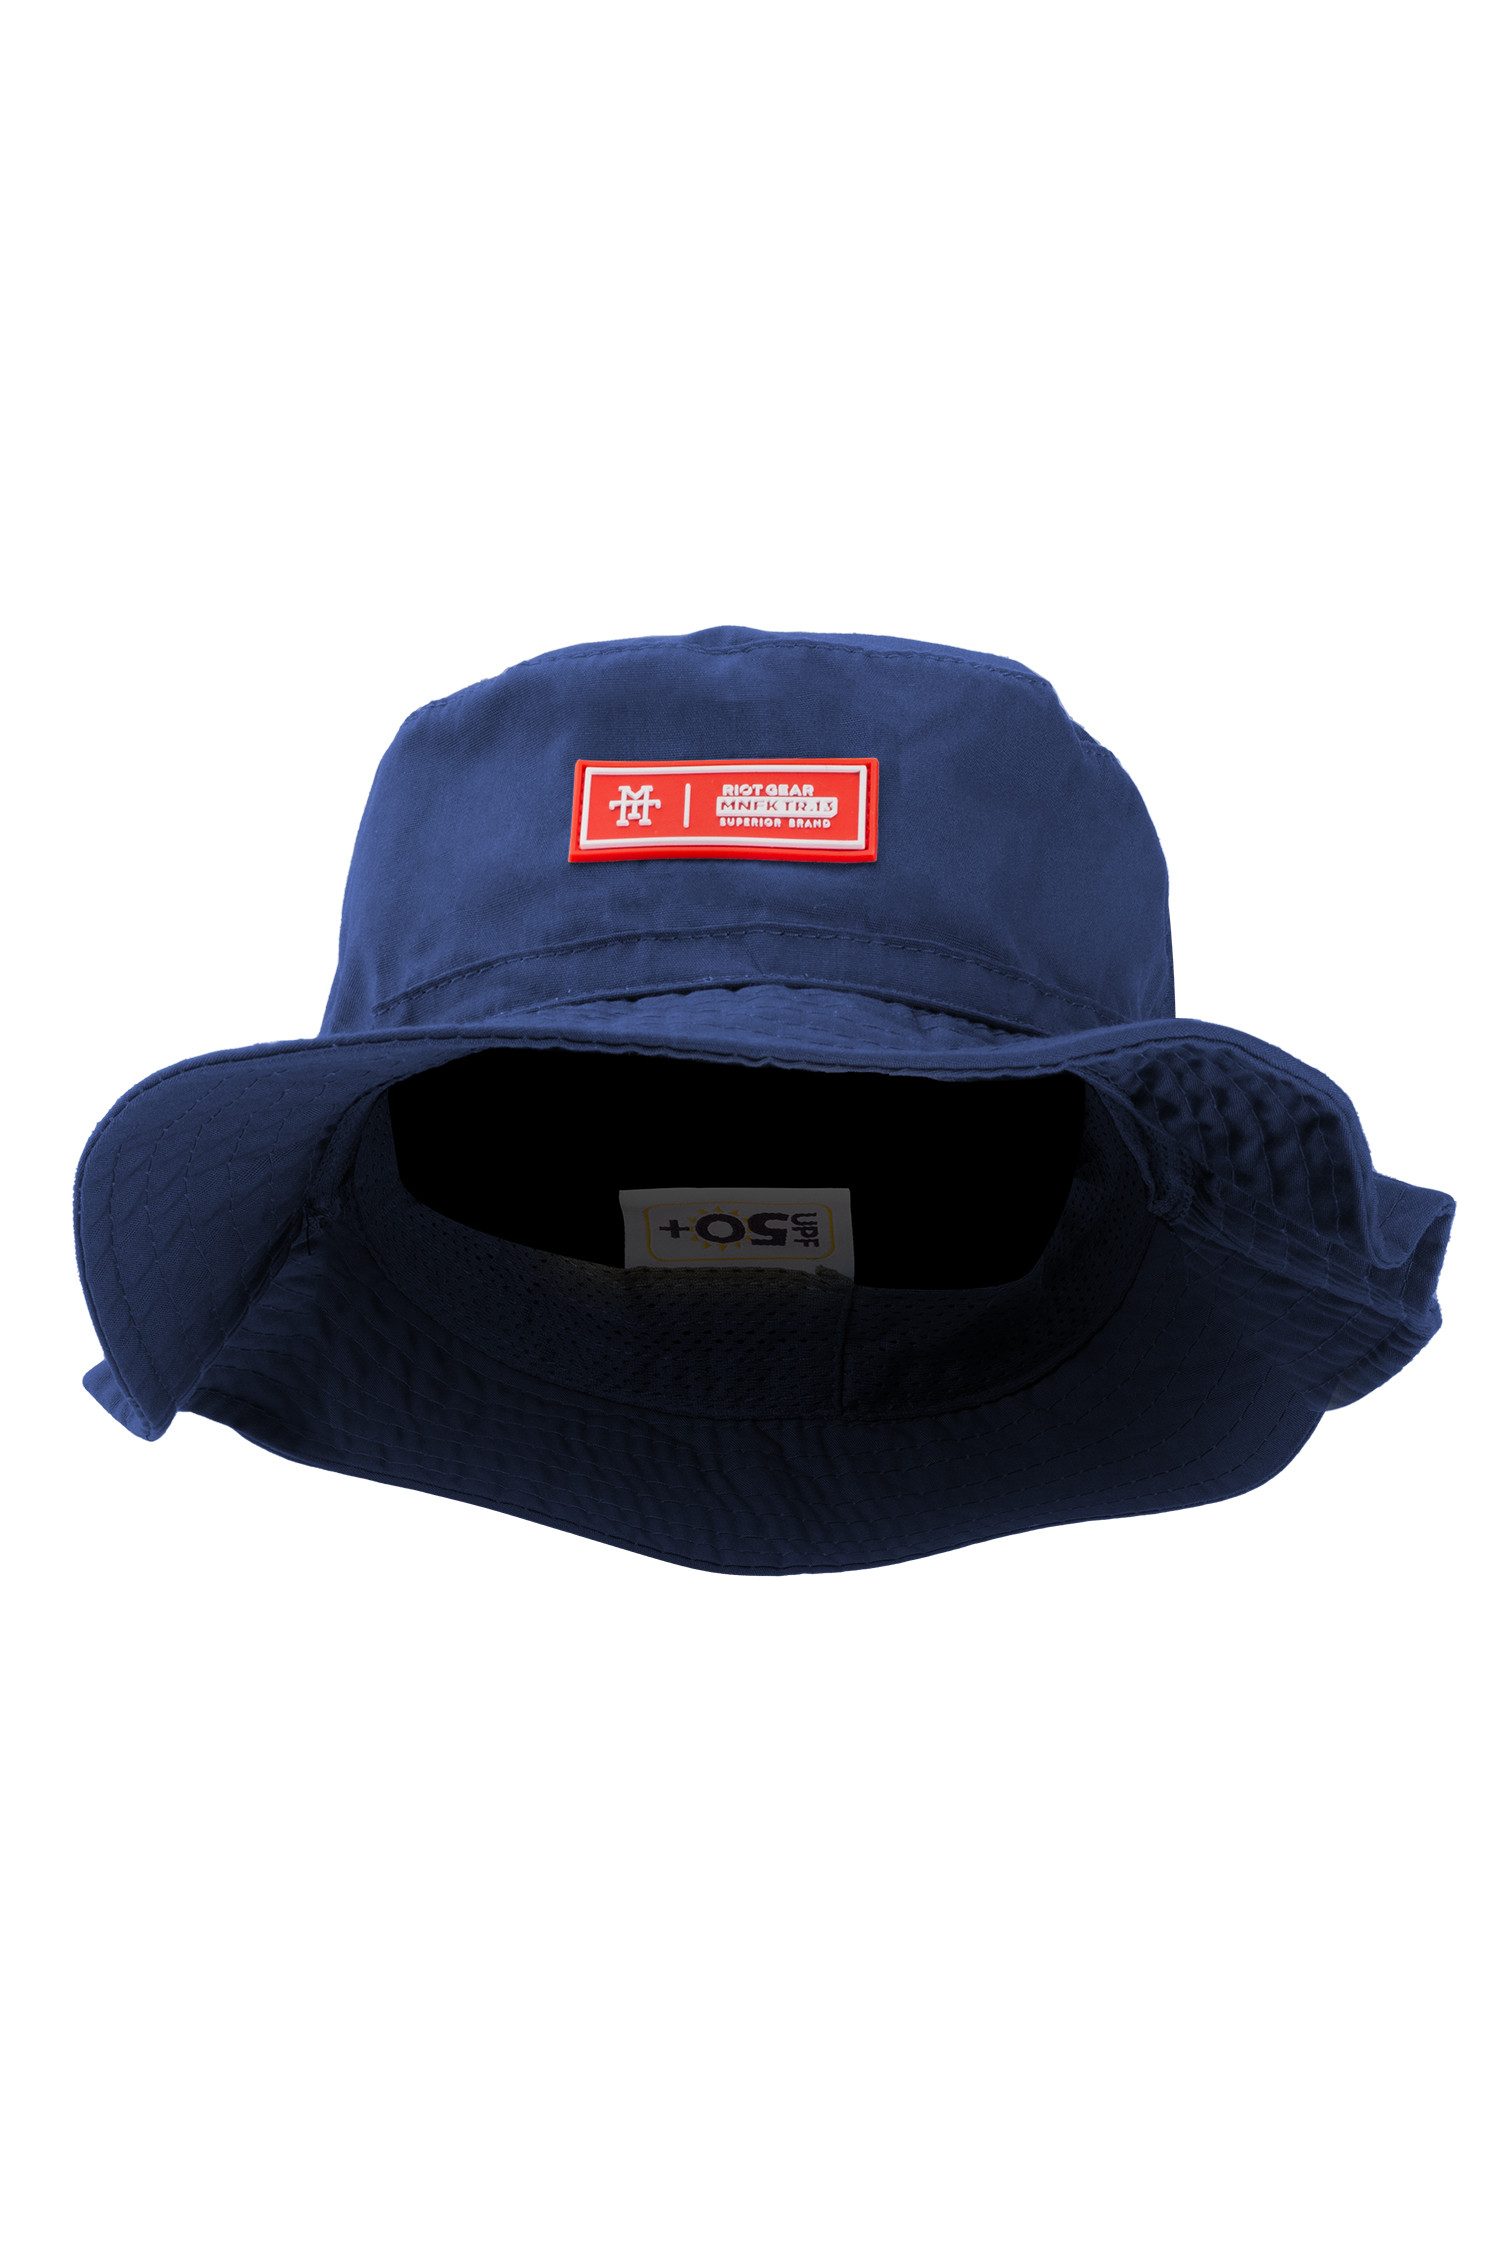 Manufaktur13 Sonnenhut Boonie Hat (Riot Gear) - Sonnenhut, Bucket Hat, Fischer Hut, Anglerhut mit UV-Schutzfaktor 50+